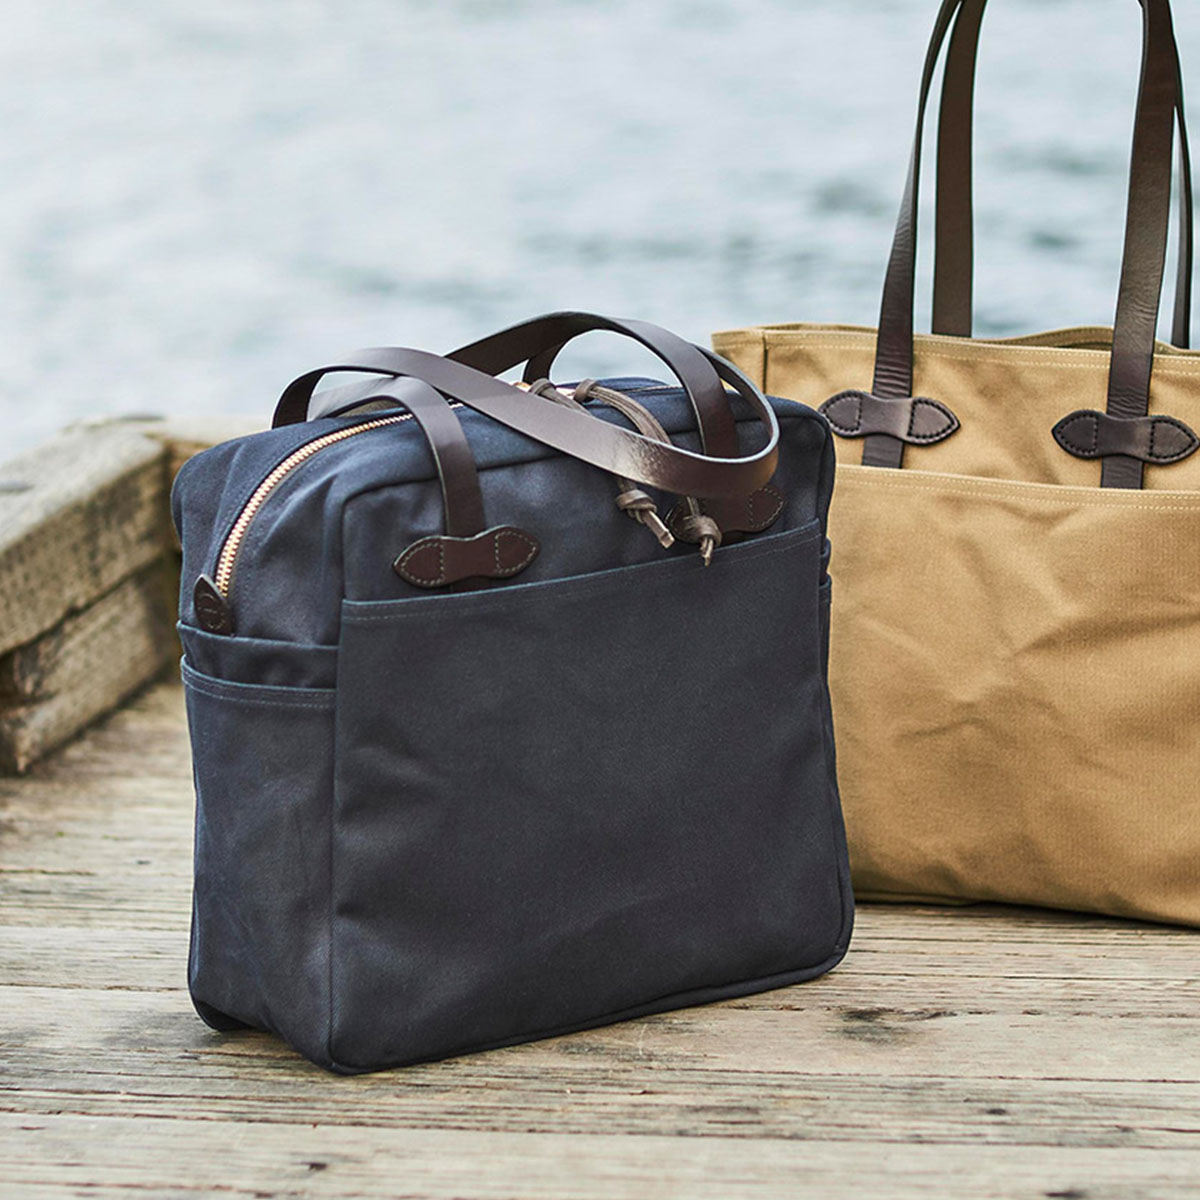 Filson Rugged Twill Tote Bag With Zipper Navy, für Männer und Frauen mit Stil und Liebe zur Qualität